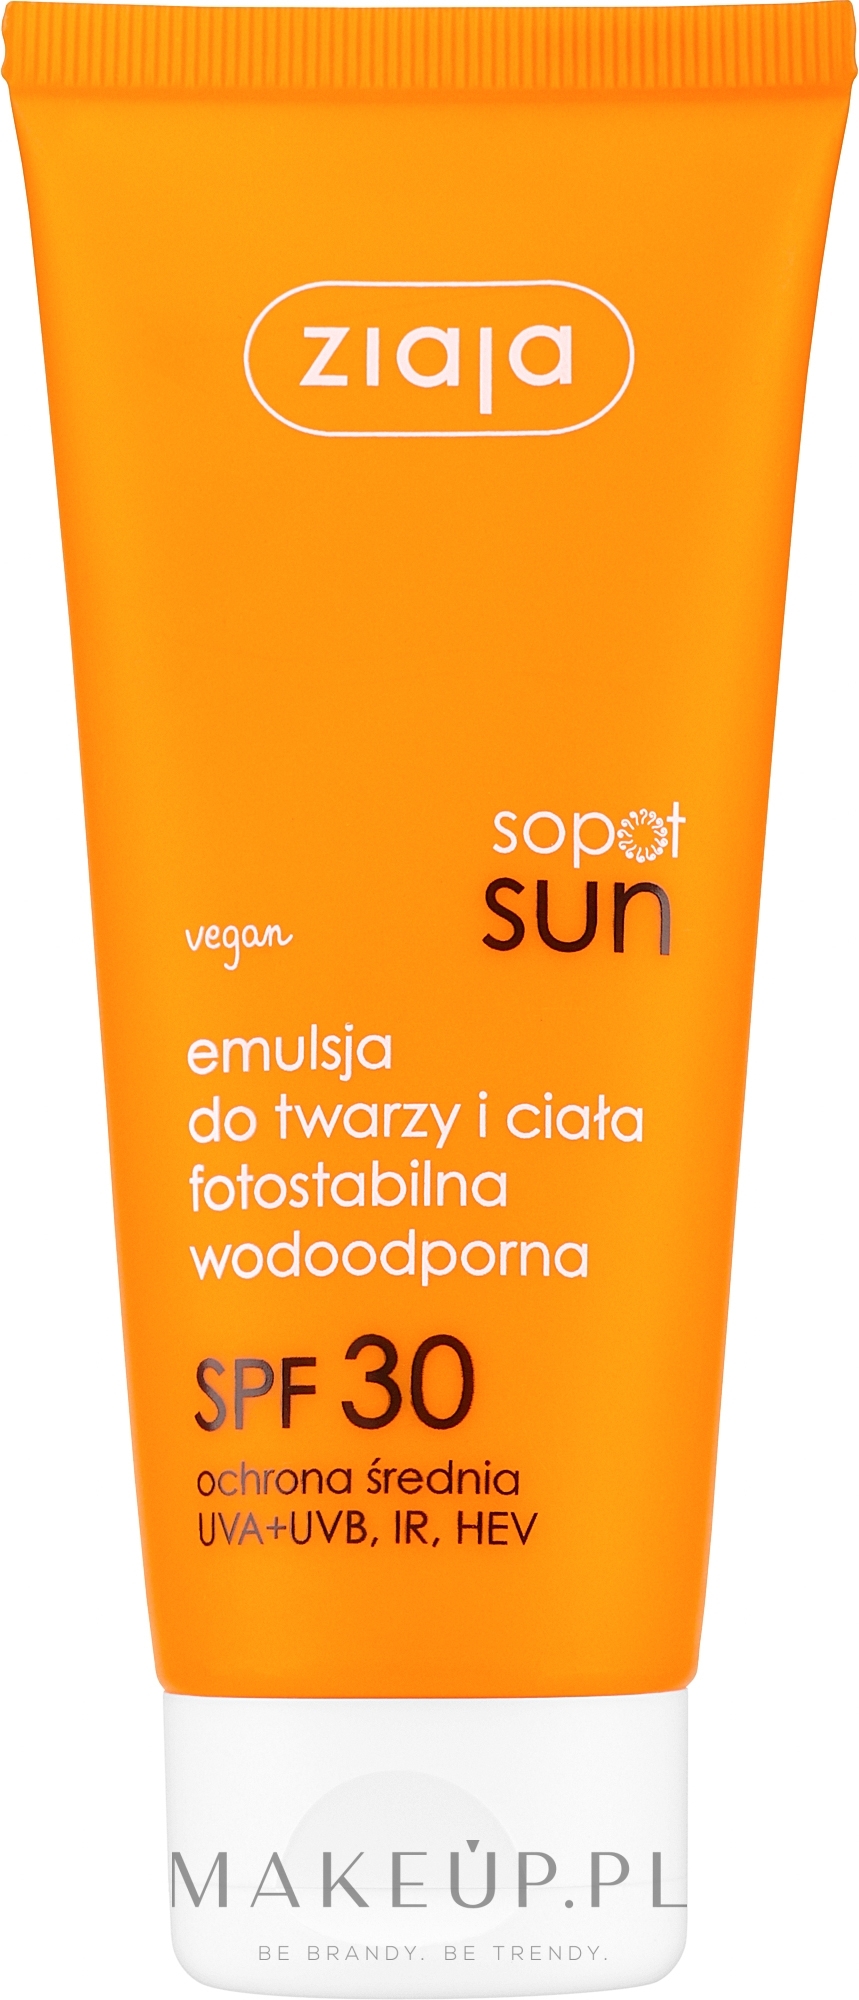 Wodoodporna fotostabilna emulsja do twarzy i ciała SPF 30 - Ziaja Sopot Sun Face & Body Emulsion SPF 30 — Zdjęcie 100 ml